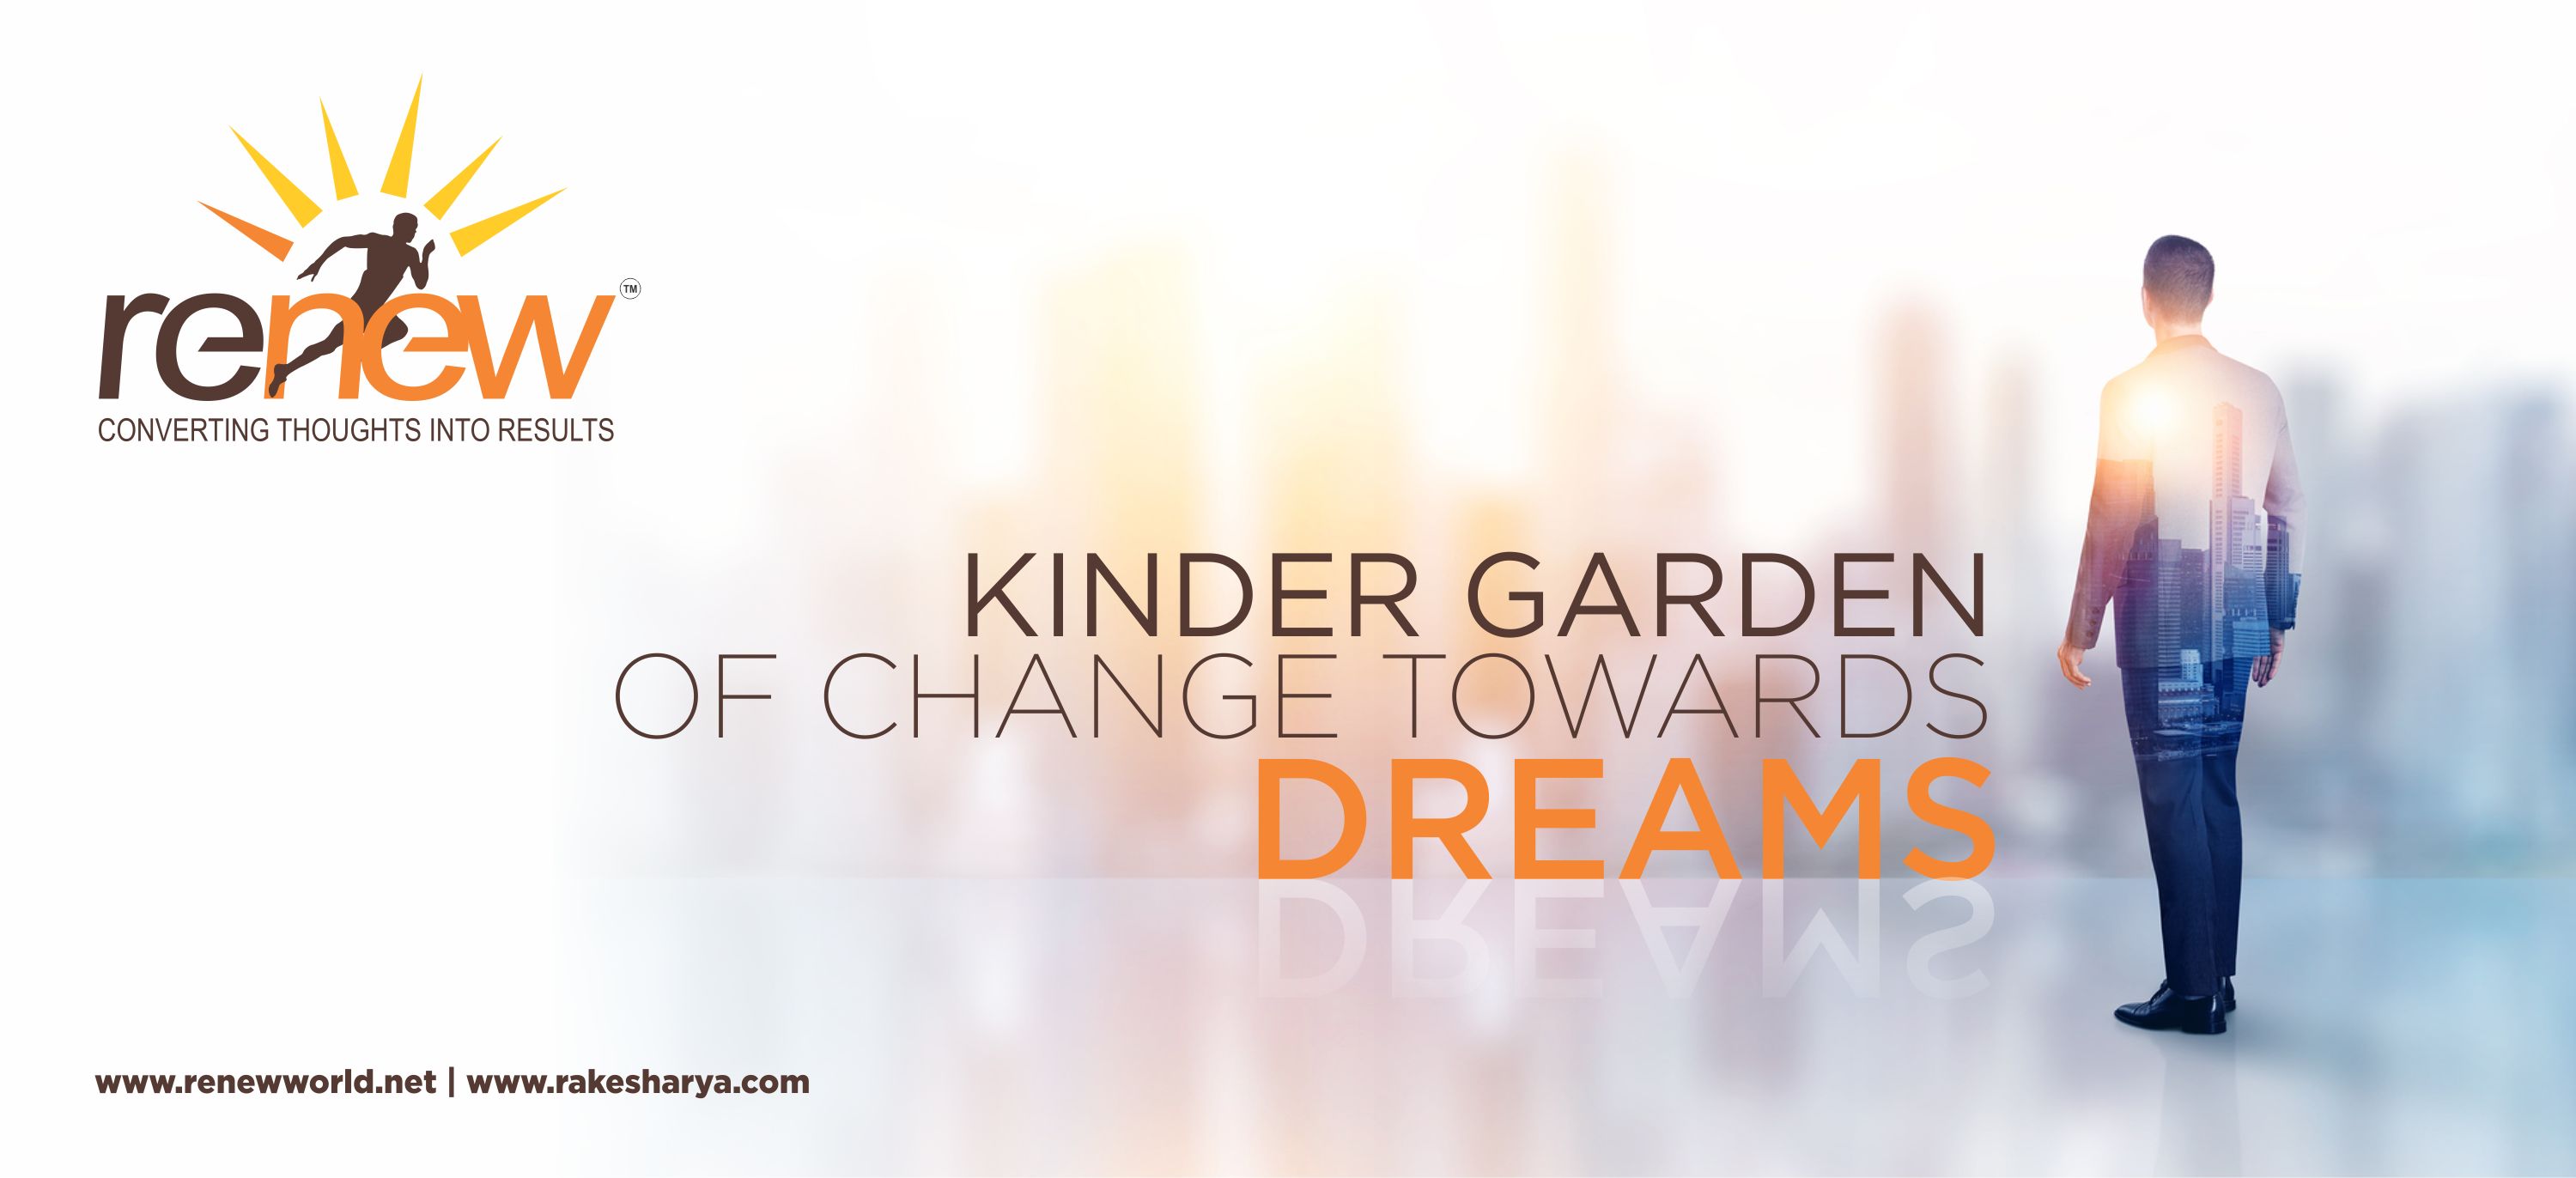 KINDER GARDEN of CHANGE TOWARDS DREAMS